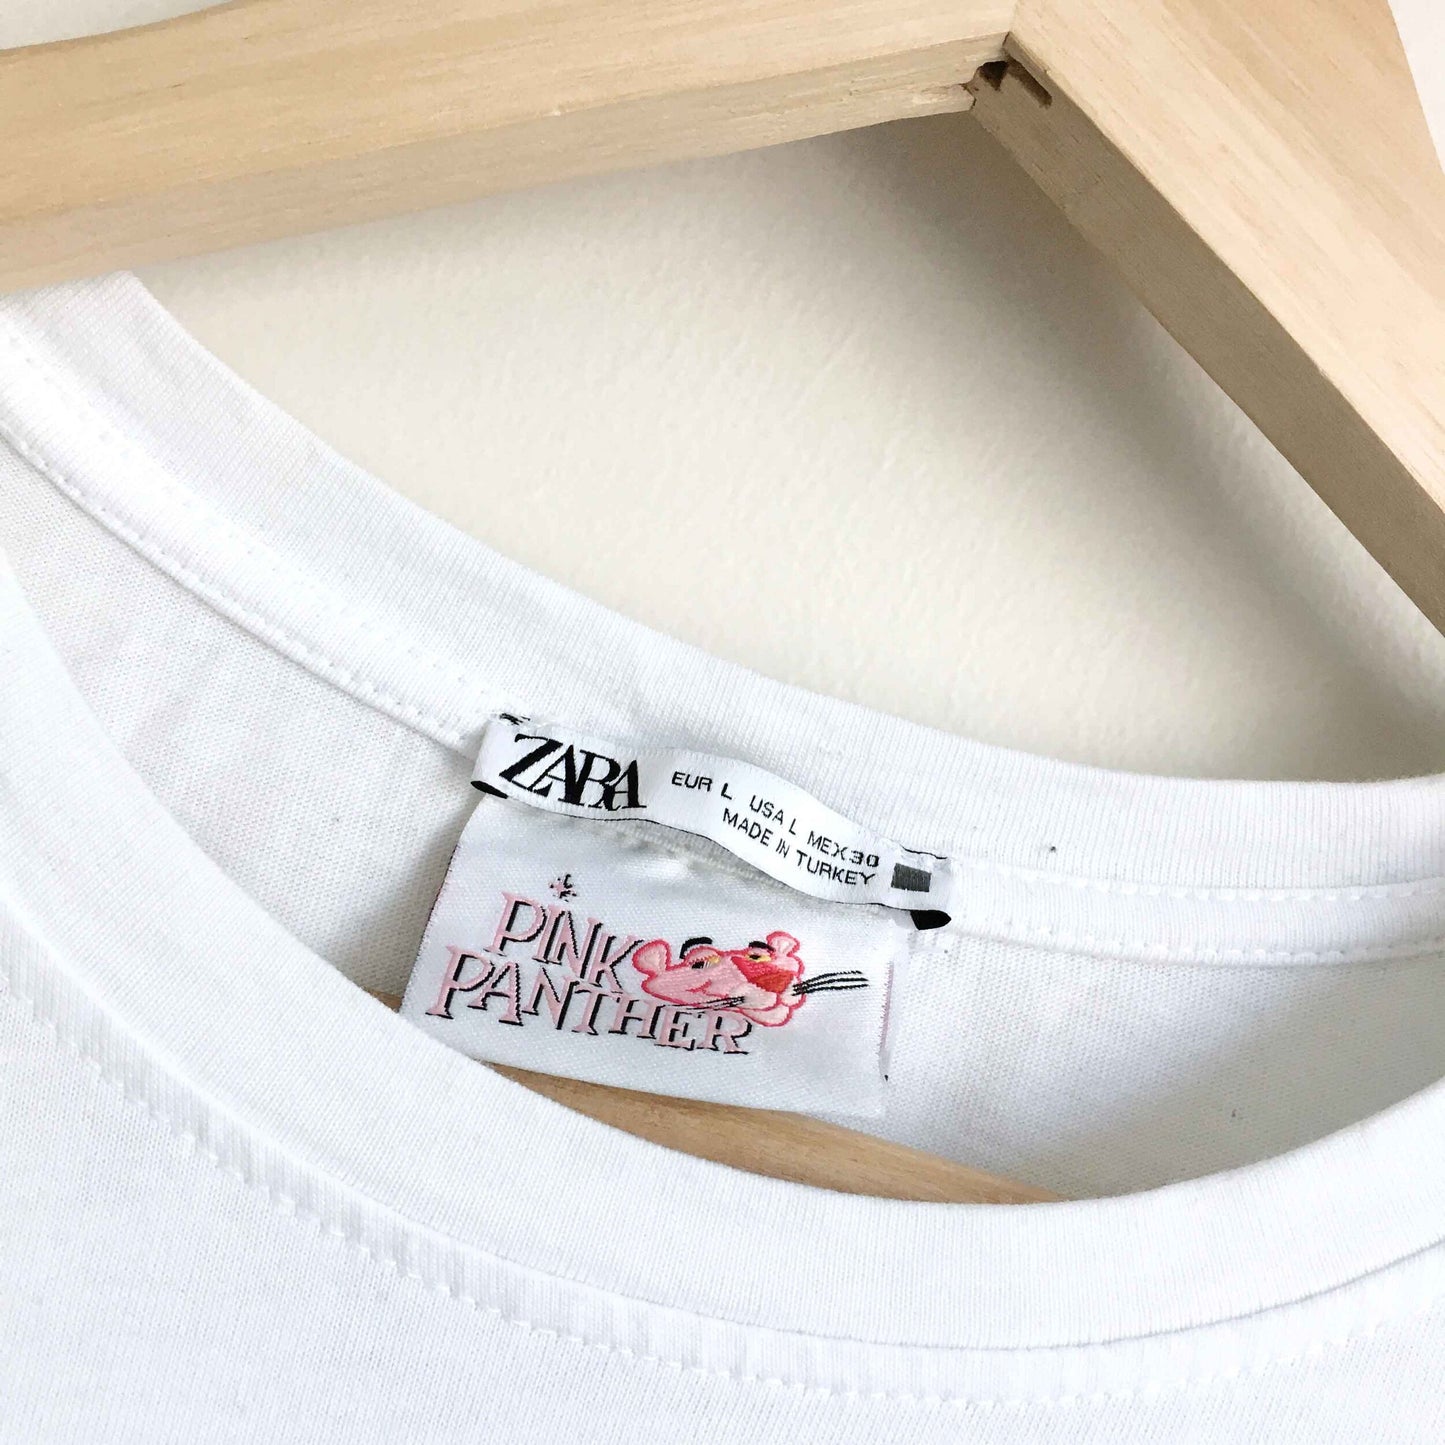 Zara x Pink Panther organic cotton t-shirt - size Large